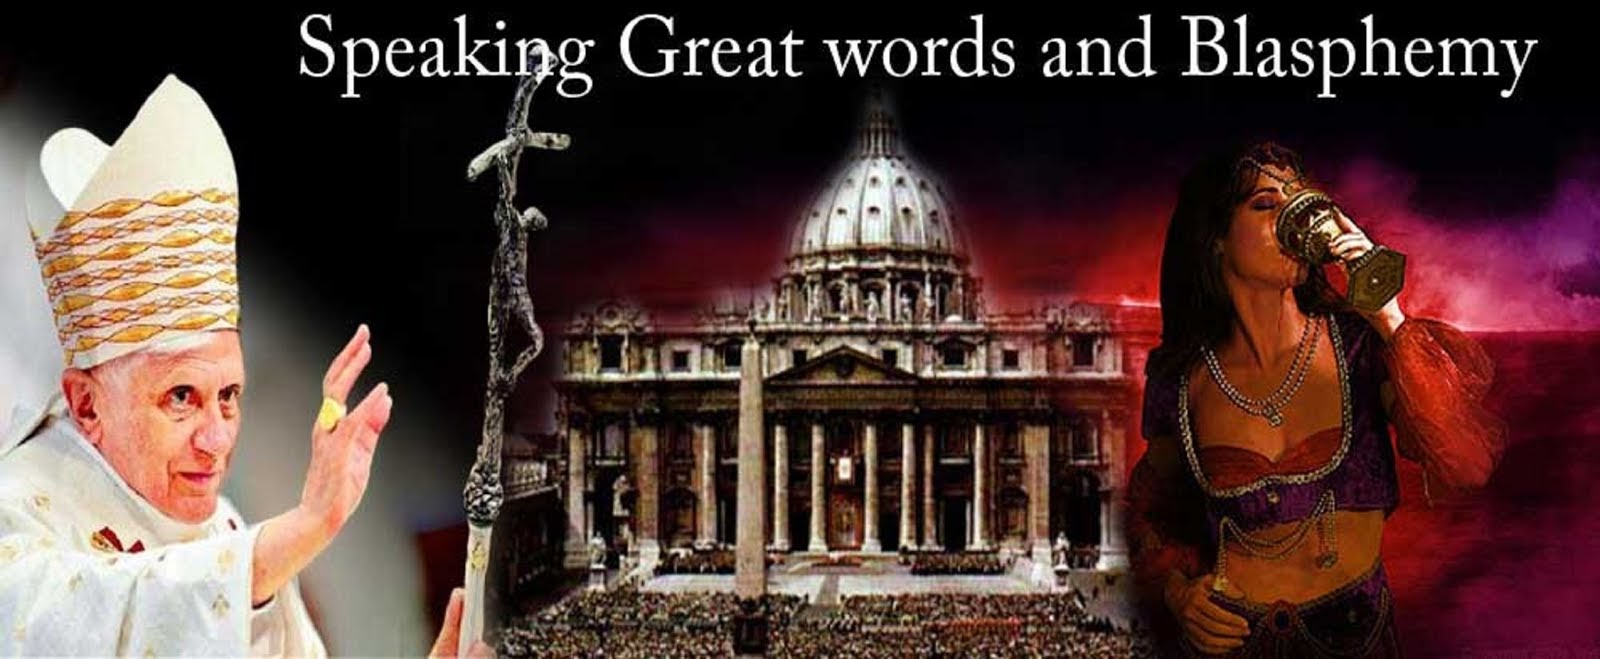 POPE FRANCIS SPEAKING GREAT WORDS OF BLASPHEMY.